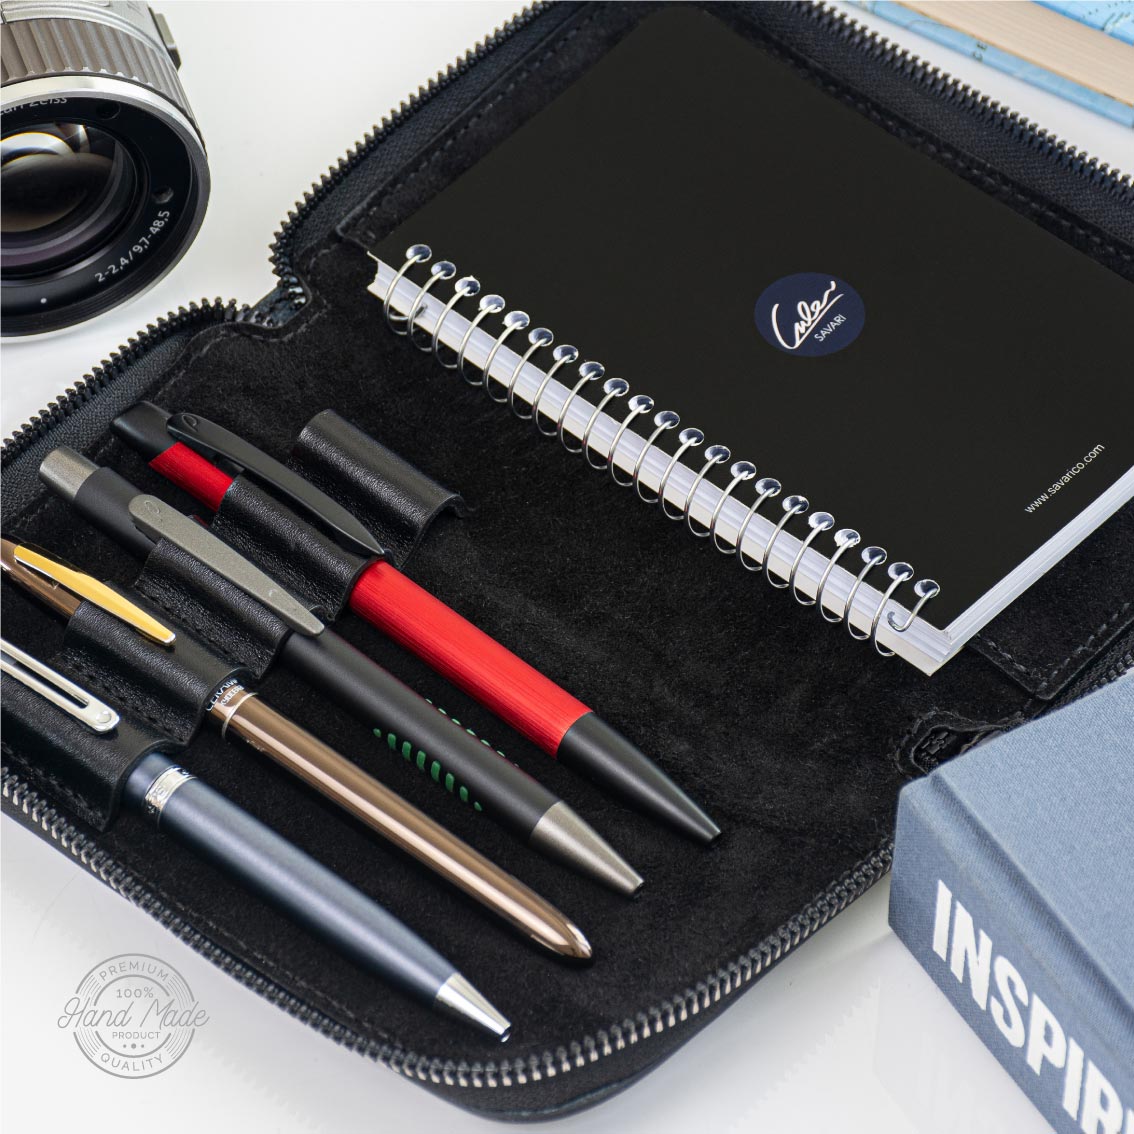 کیف قلم تمام چرم طبیعی دور زیپ دار به همراه دفترچه یادداشت قابل تعویض برند سواری SAVARI ( مدل S-۱۳ )